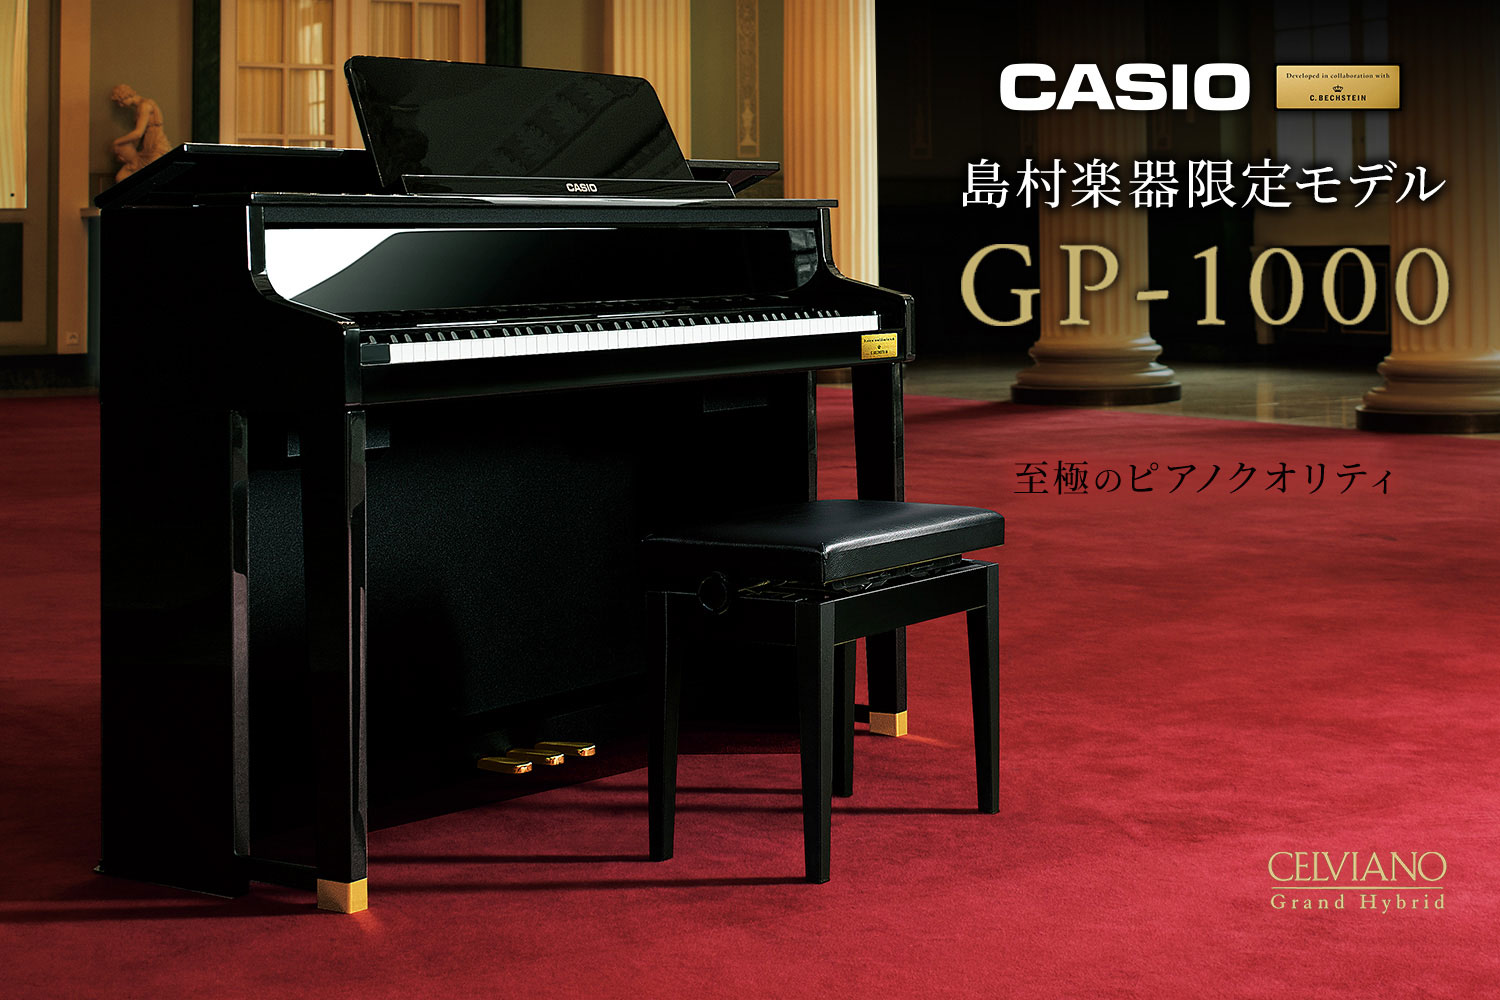 【電子ピアノ】今、人気のCASIO×C.ベヒシュタイン コラボレーションモデル「GP-1000」展示ございます！